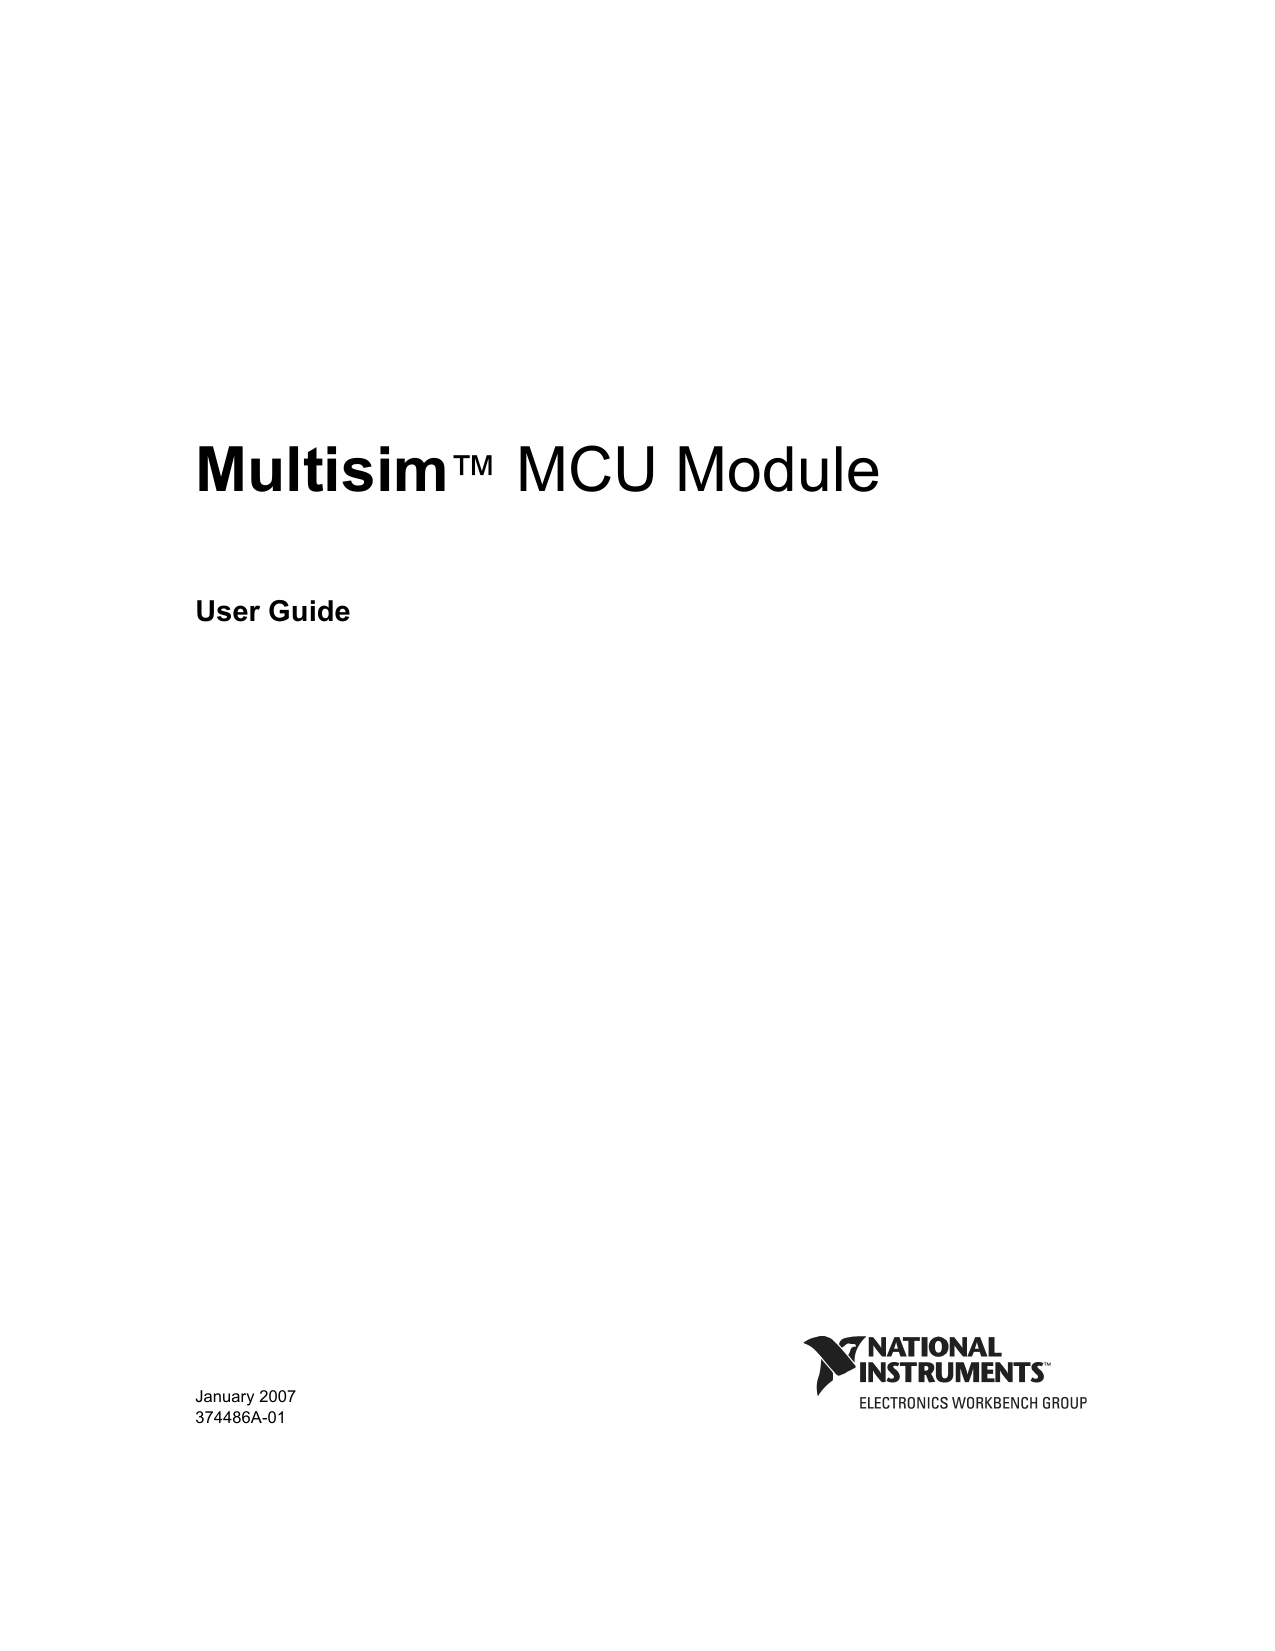 multisim 10 mcu module user guide